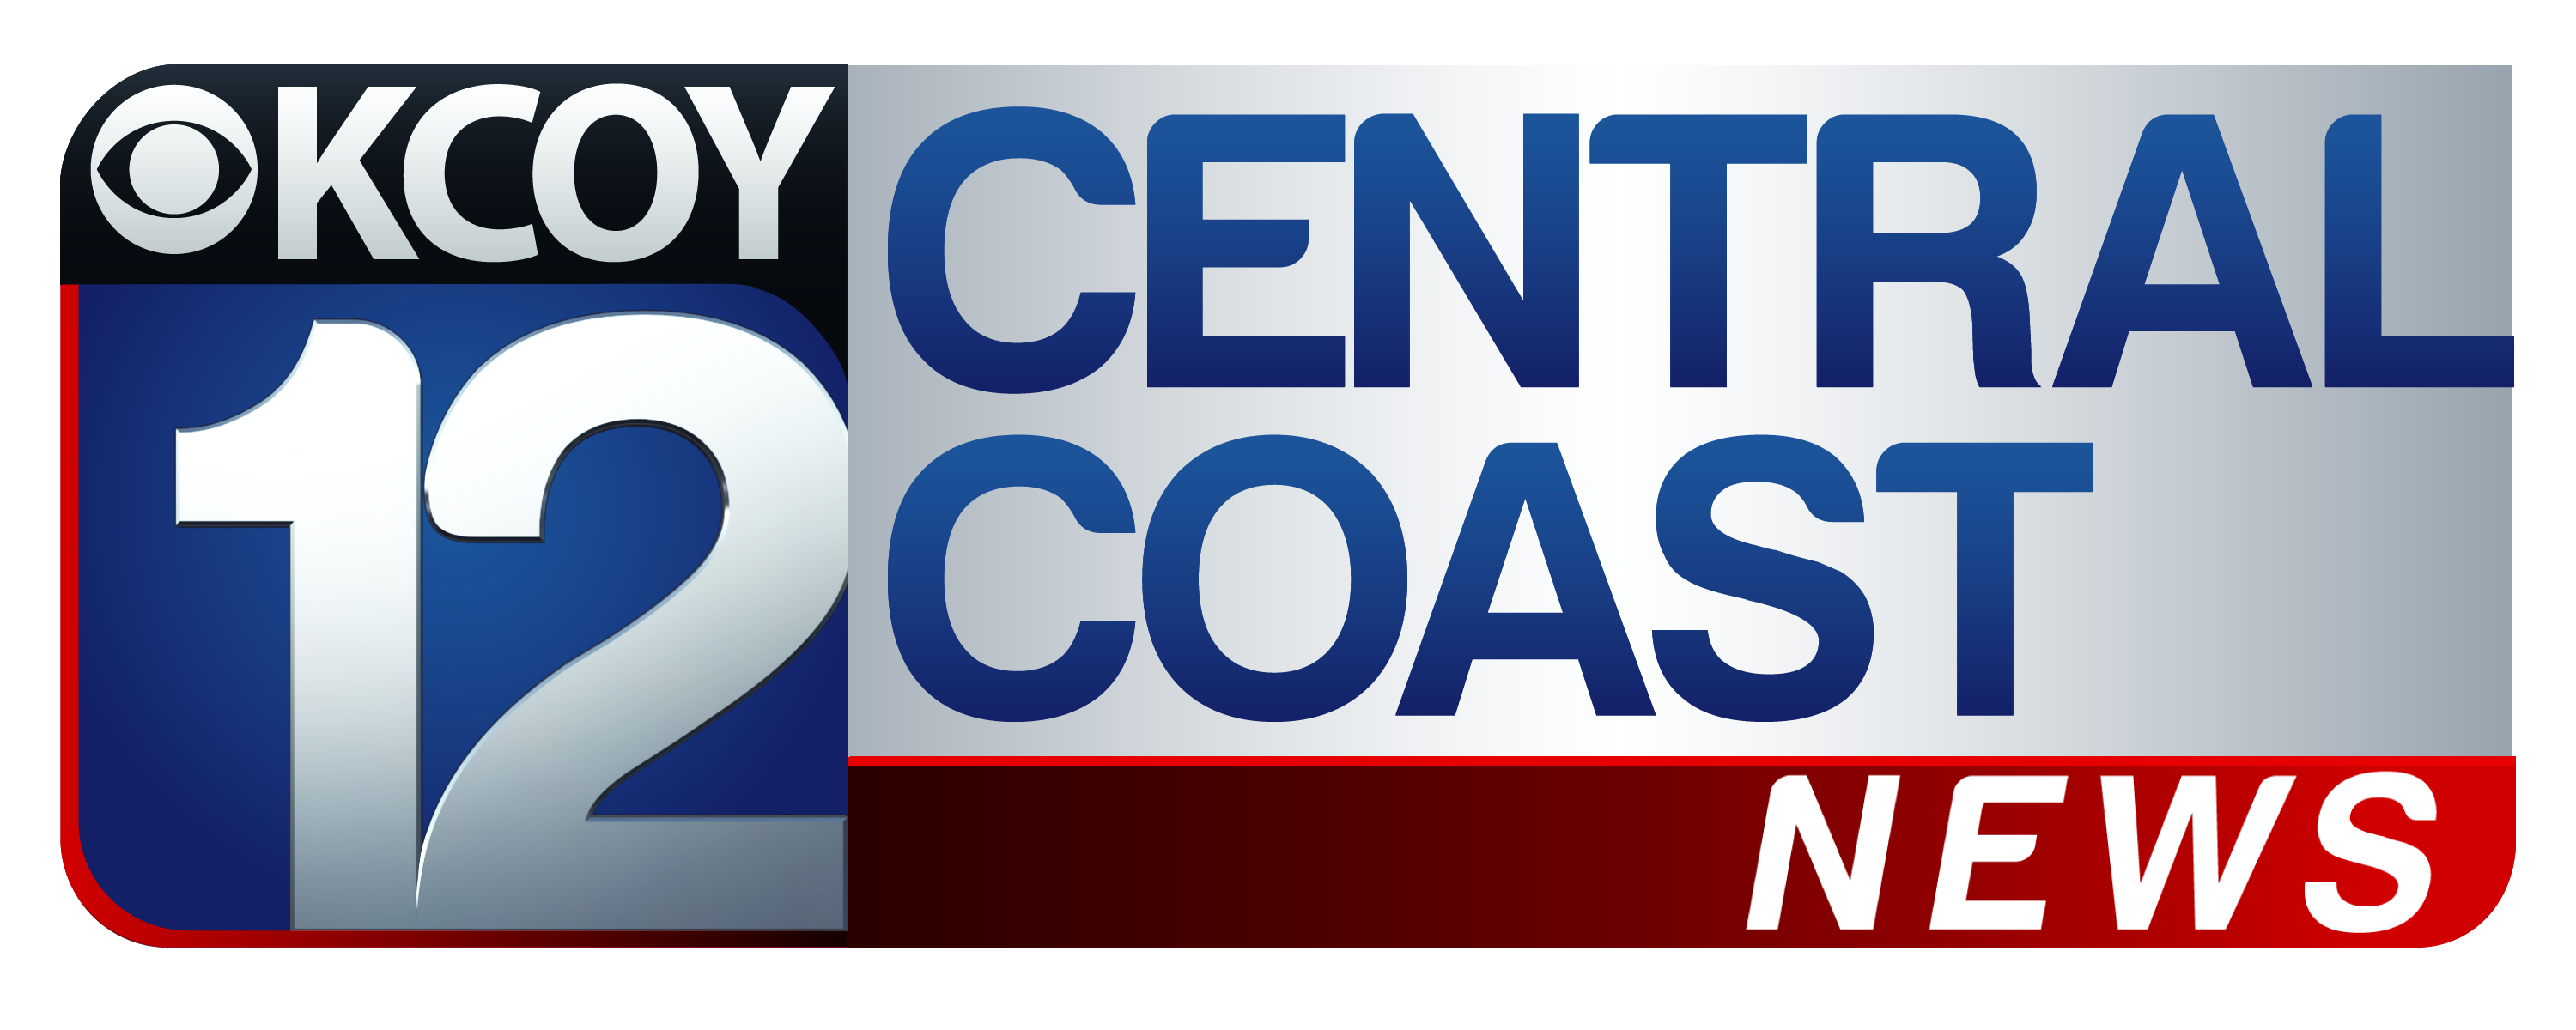 KCOY - Central Coast News